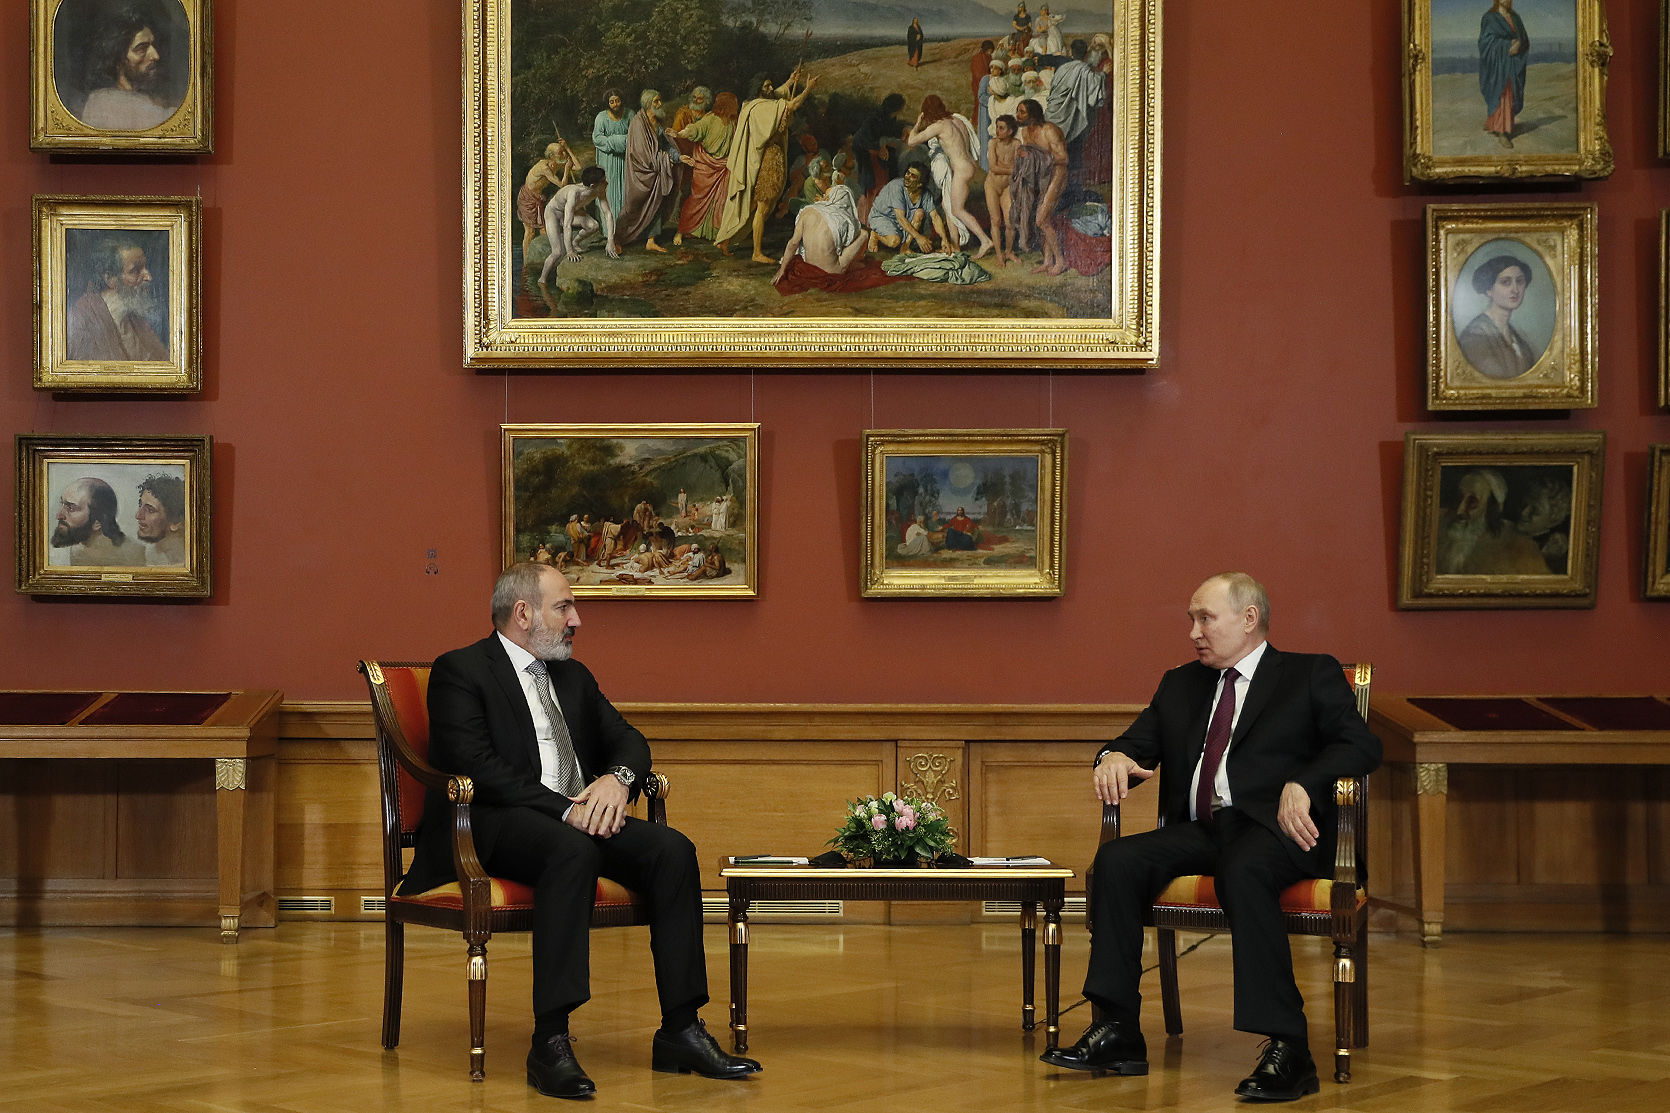 Pashinyan-Putin meeting in St. Petersburg